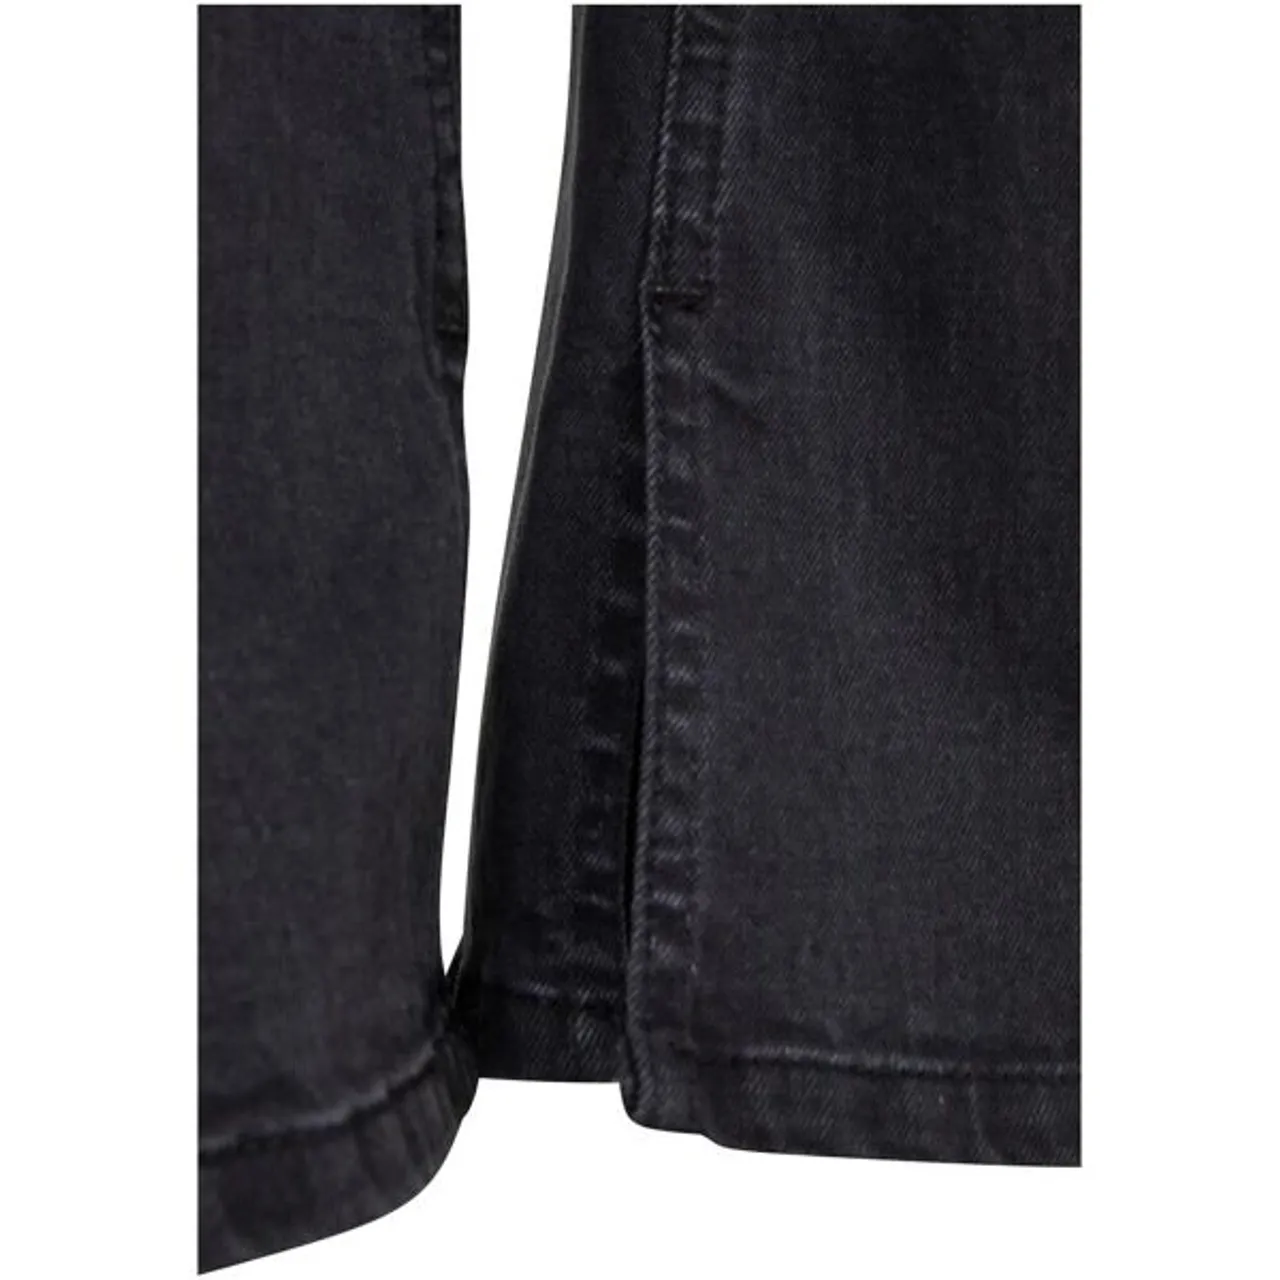 Bequeme Jeans URBAN CLASSICS "Urban Classics Damen Ladies Highwaist Straight Slit Denim Pants" Gr. 34, Normalgrößen, schwarz (blackwashed) Damen Jeans